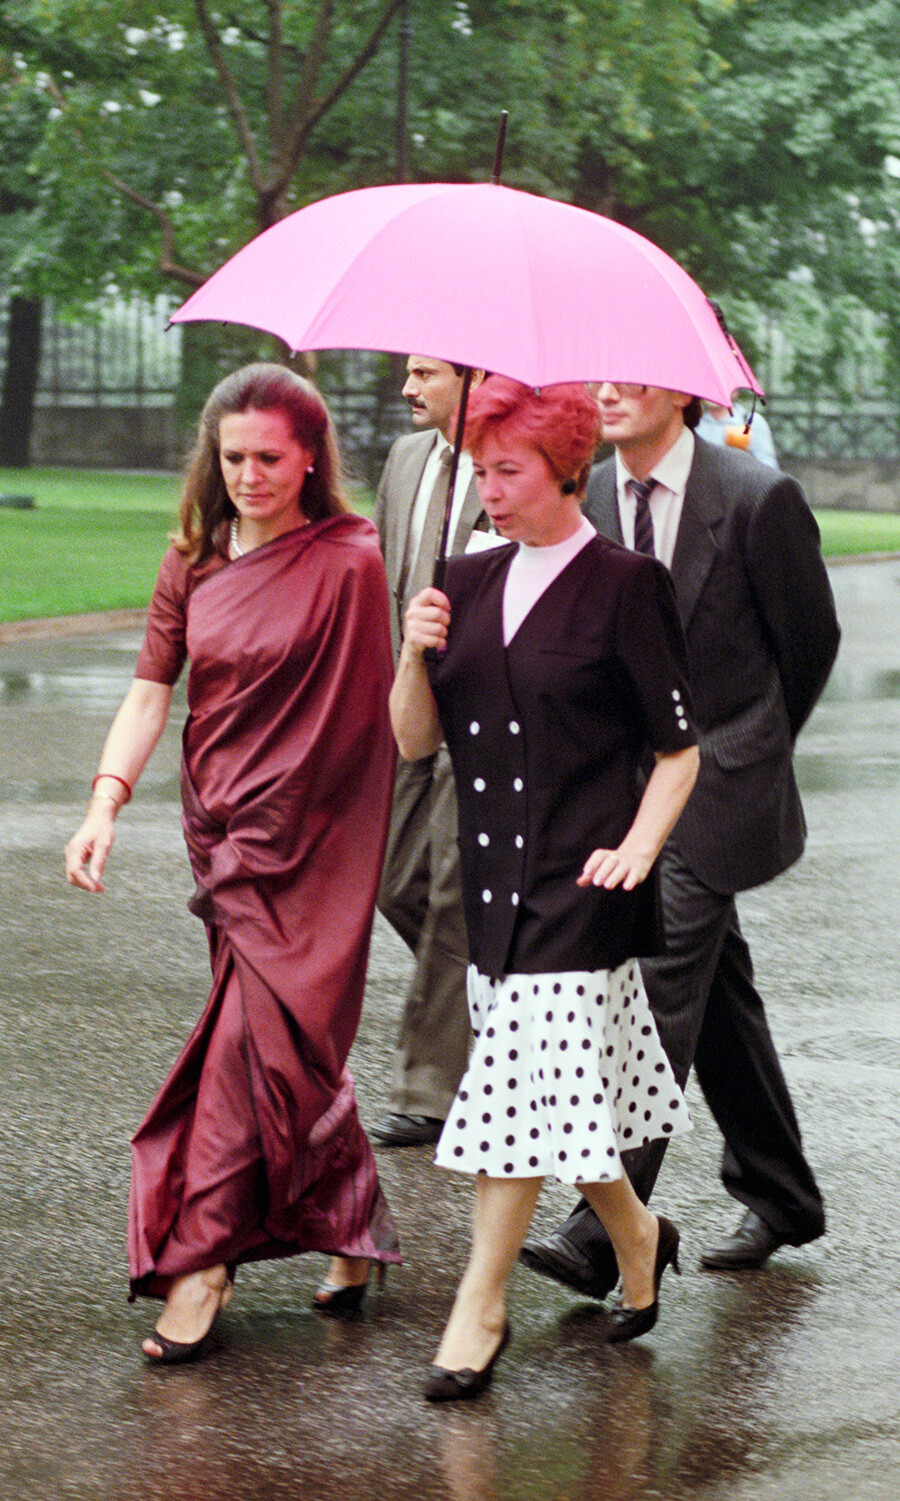 Raïssa Gorbatcheva montre à l’épouse du Premier ministre indien Sonia Gandhi les curiosités du Kremlin de Moscou, 1989.

